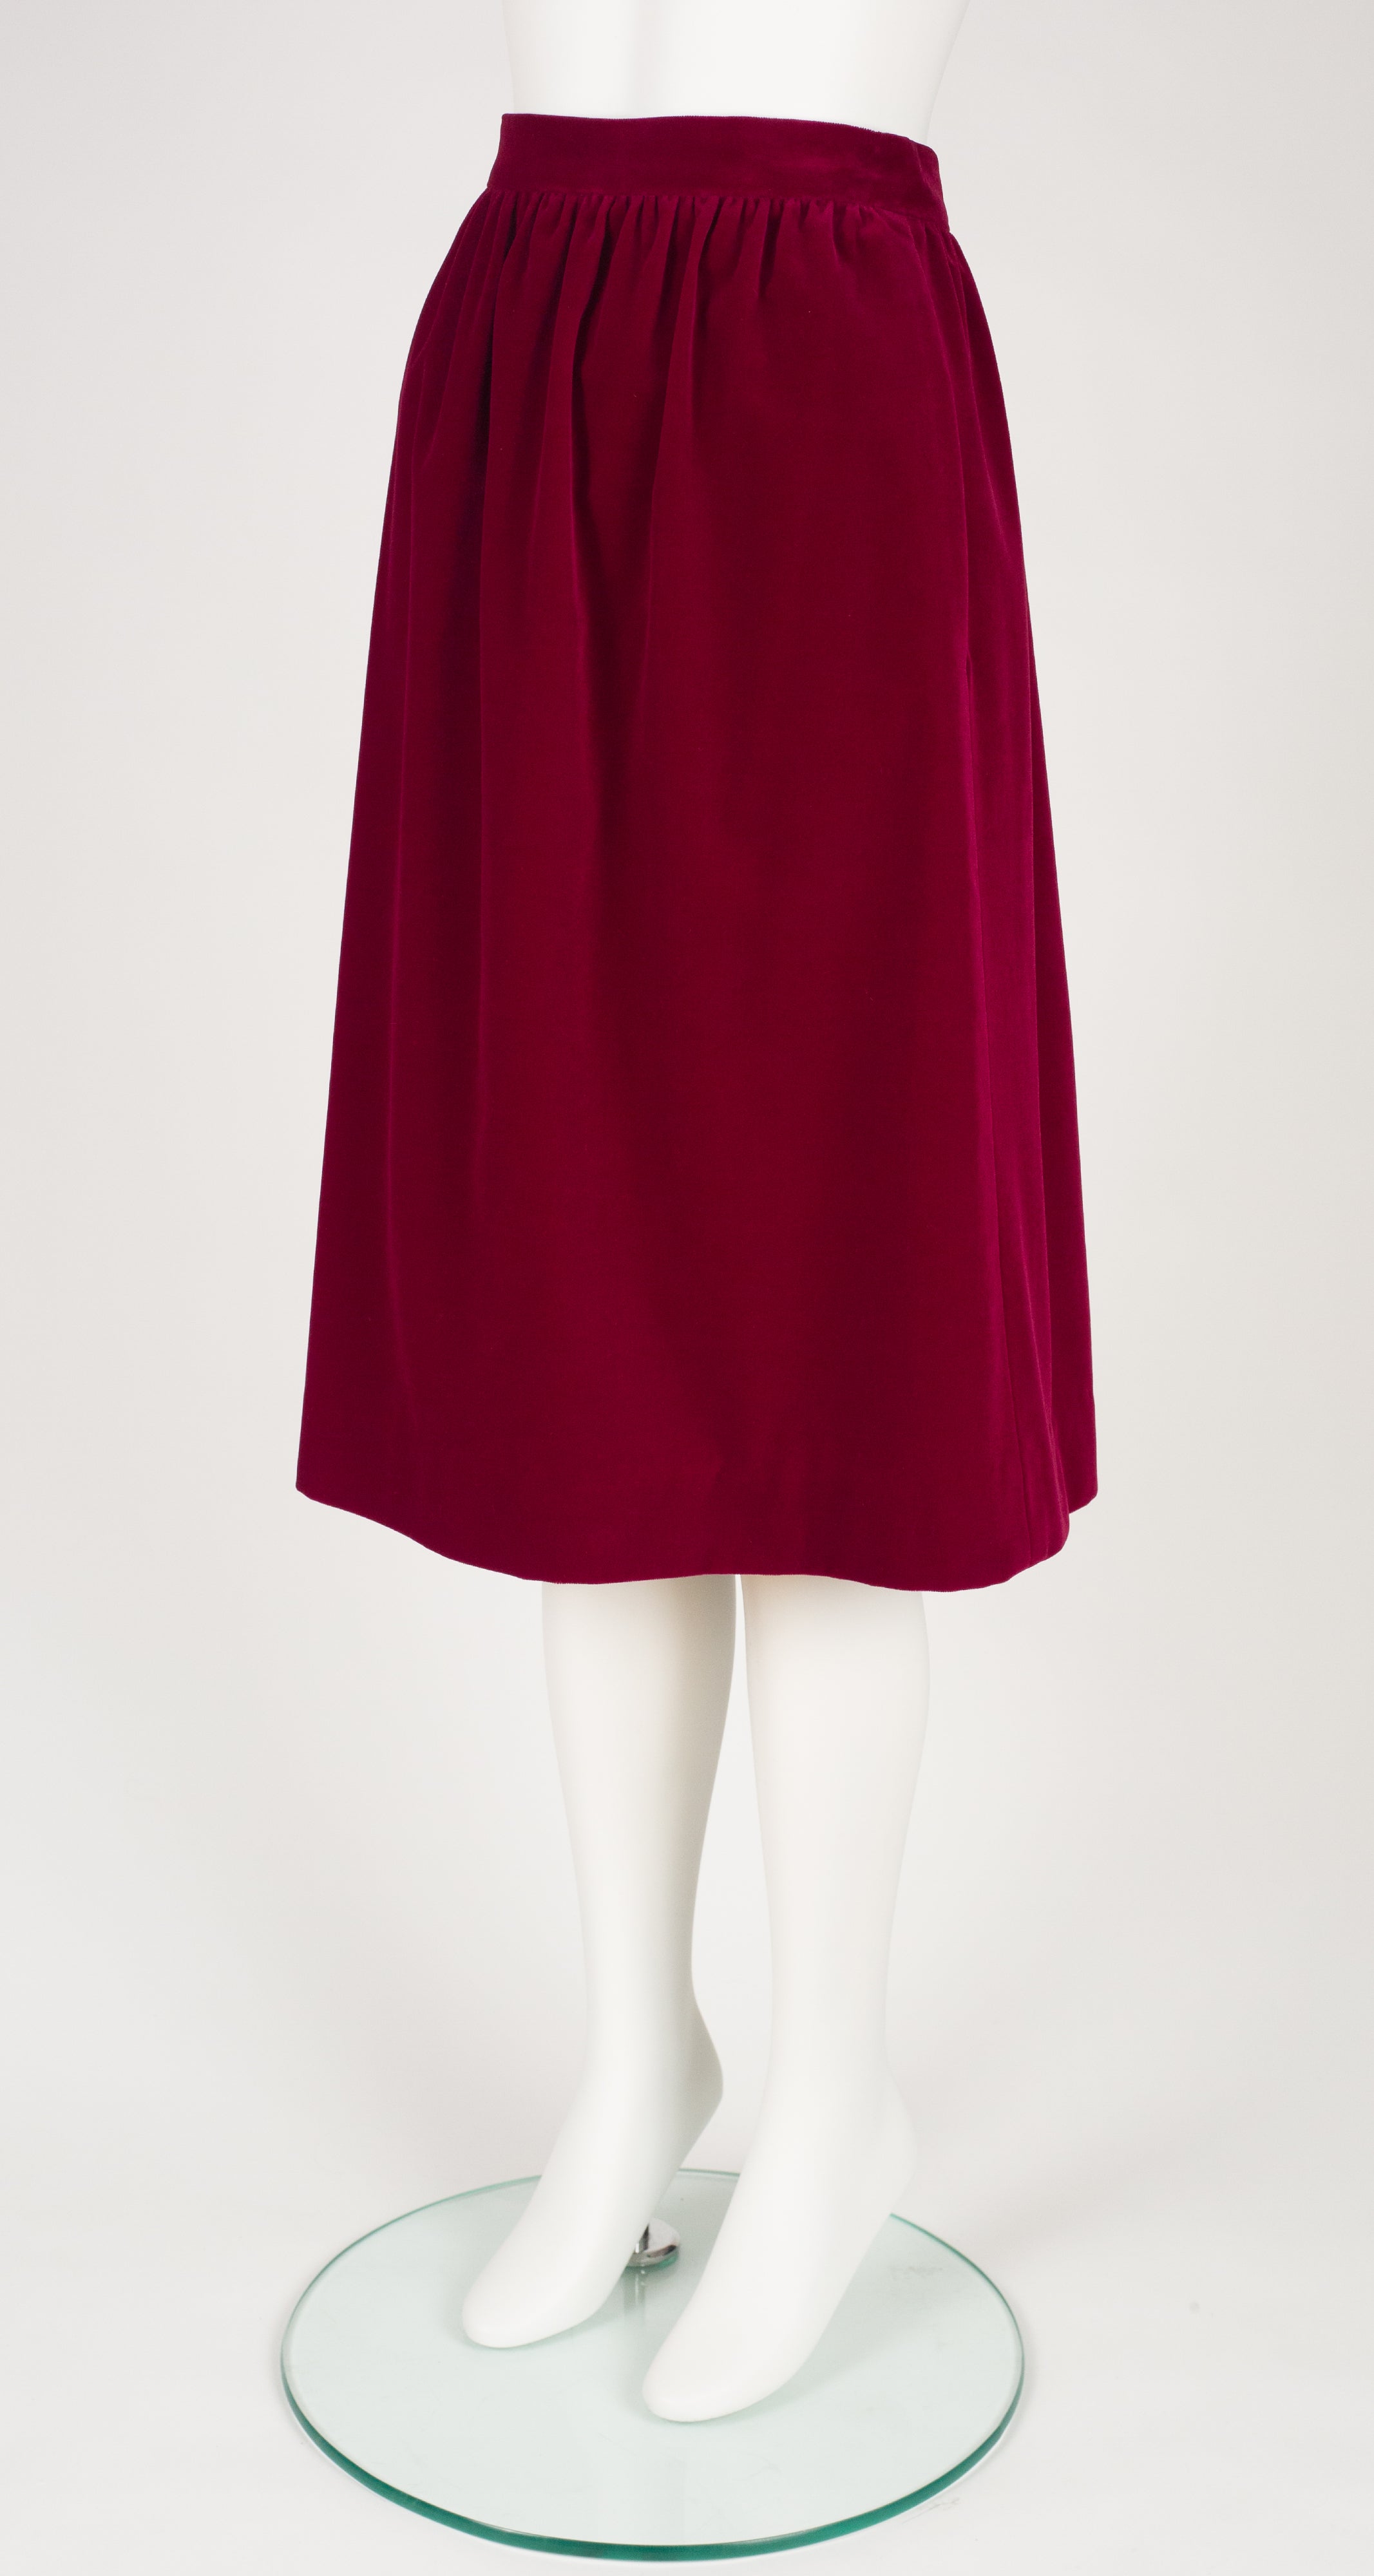 1970s Burgundy Cotton Velvet High-Waisted Skirt